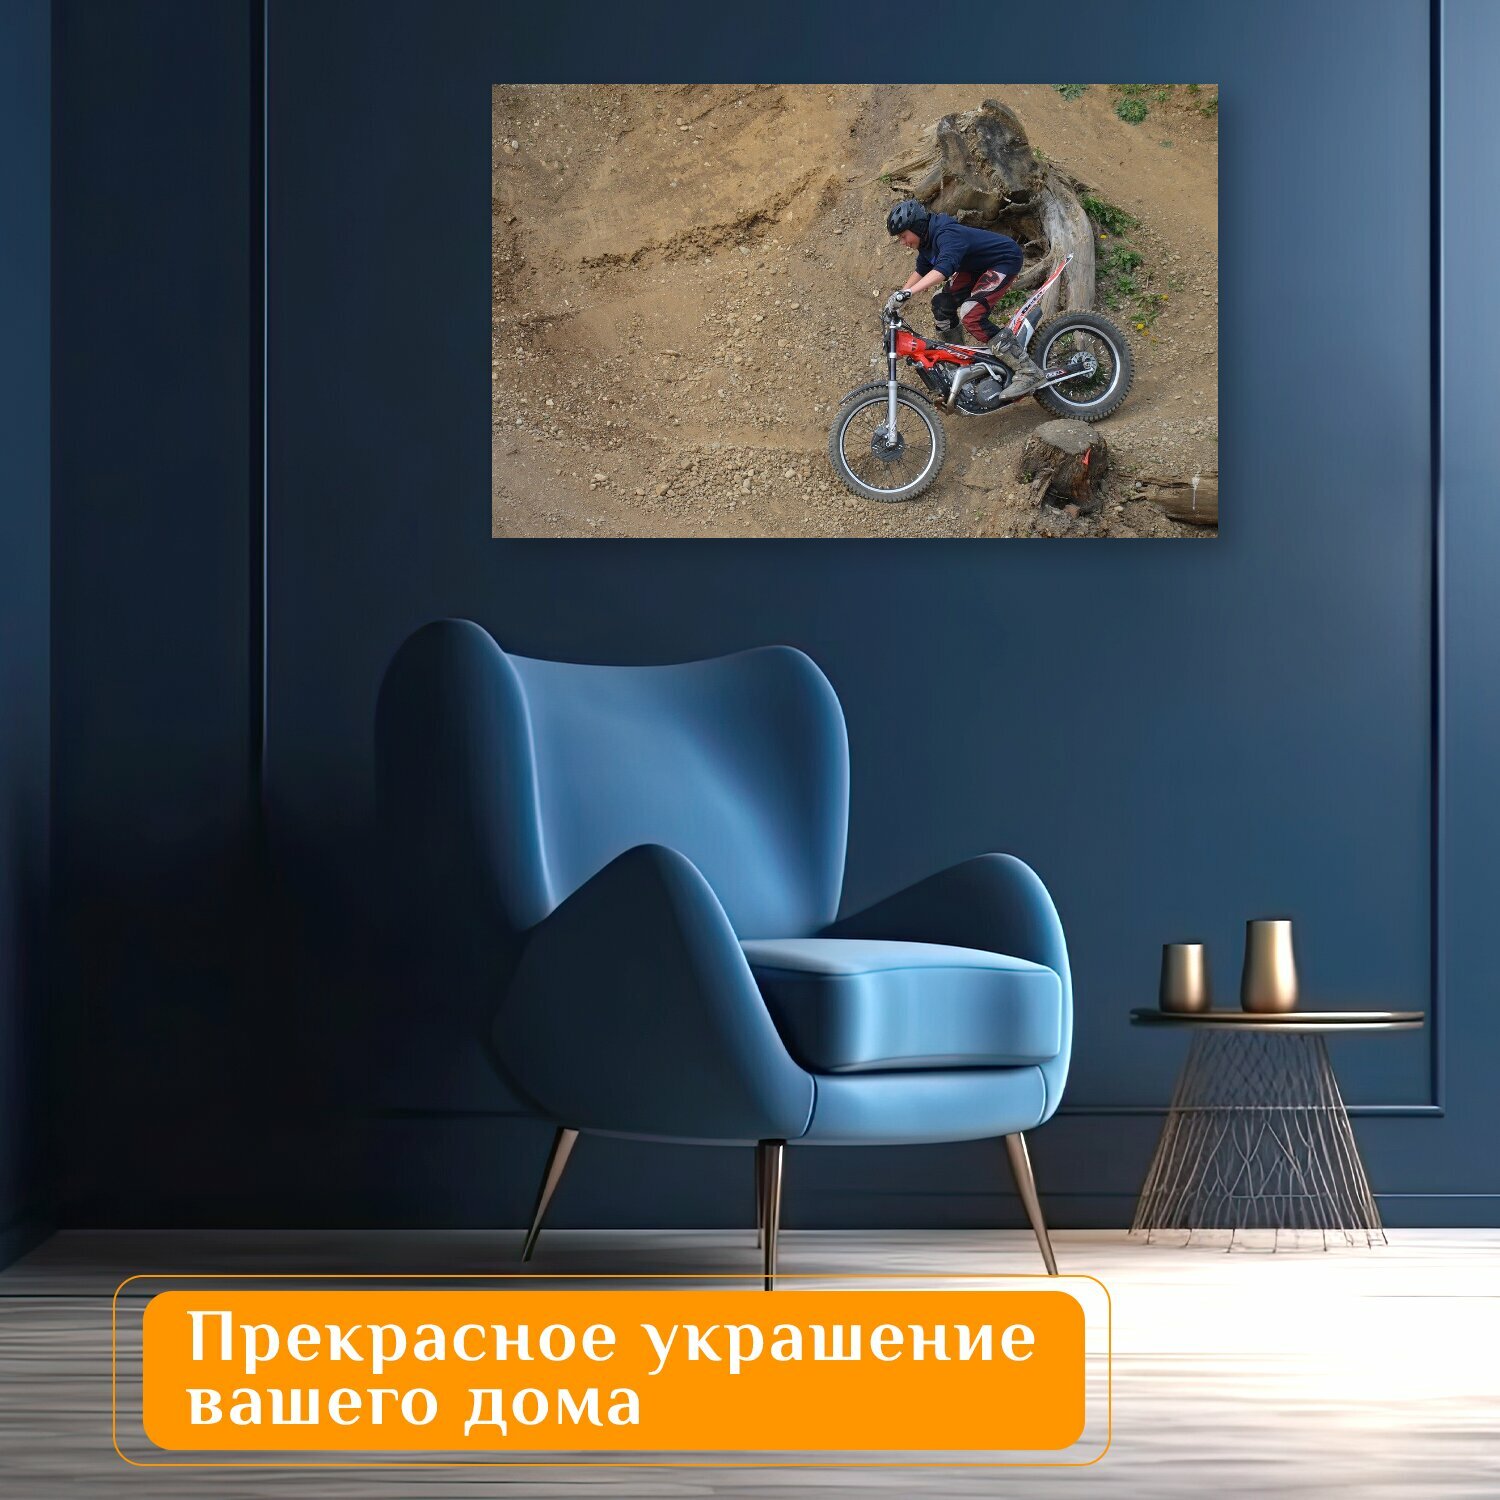 Картина на холсте "Испытание, пробный мотоцикл, местность" на подрамнике 120х75 см. для интерьера